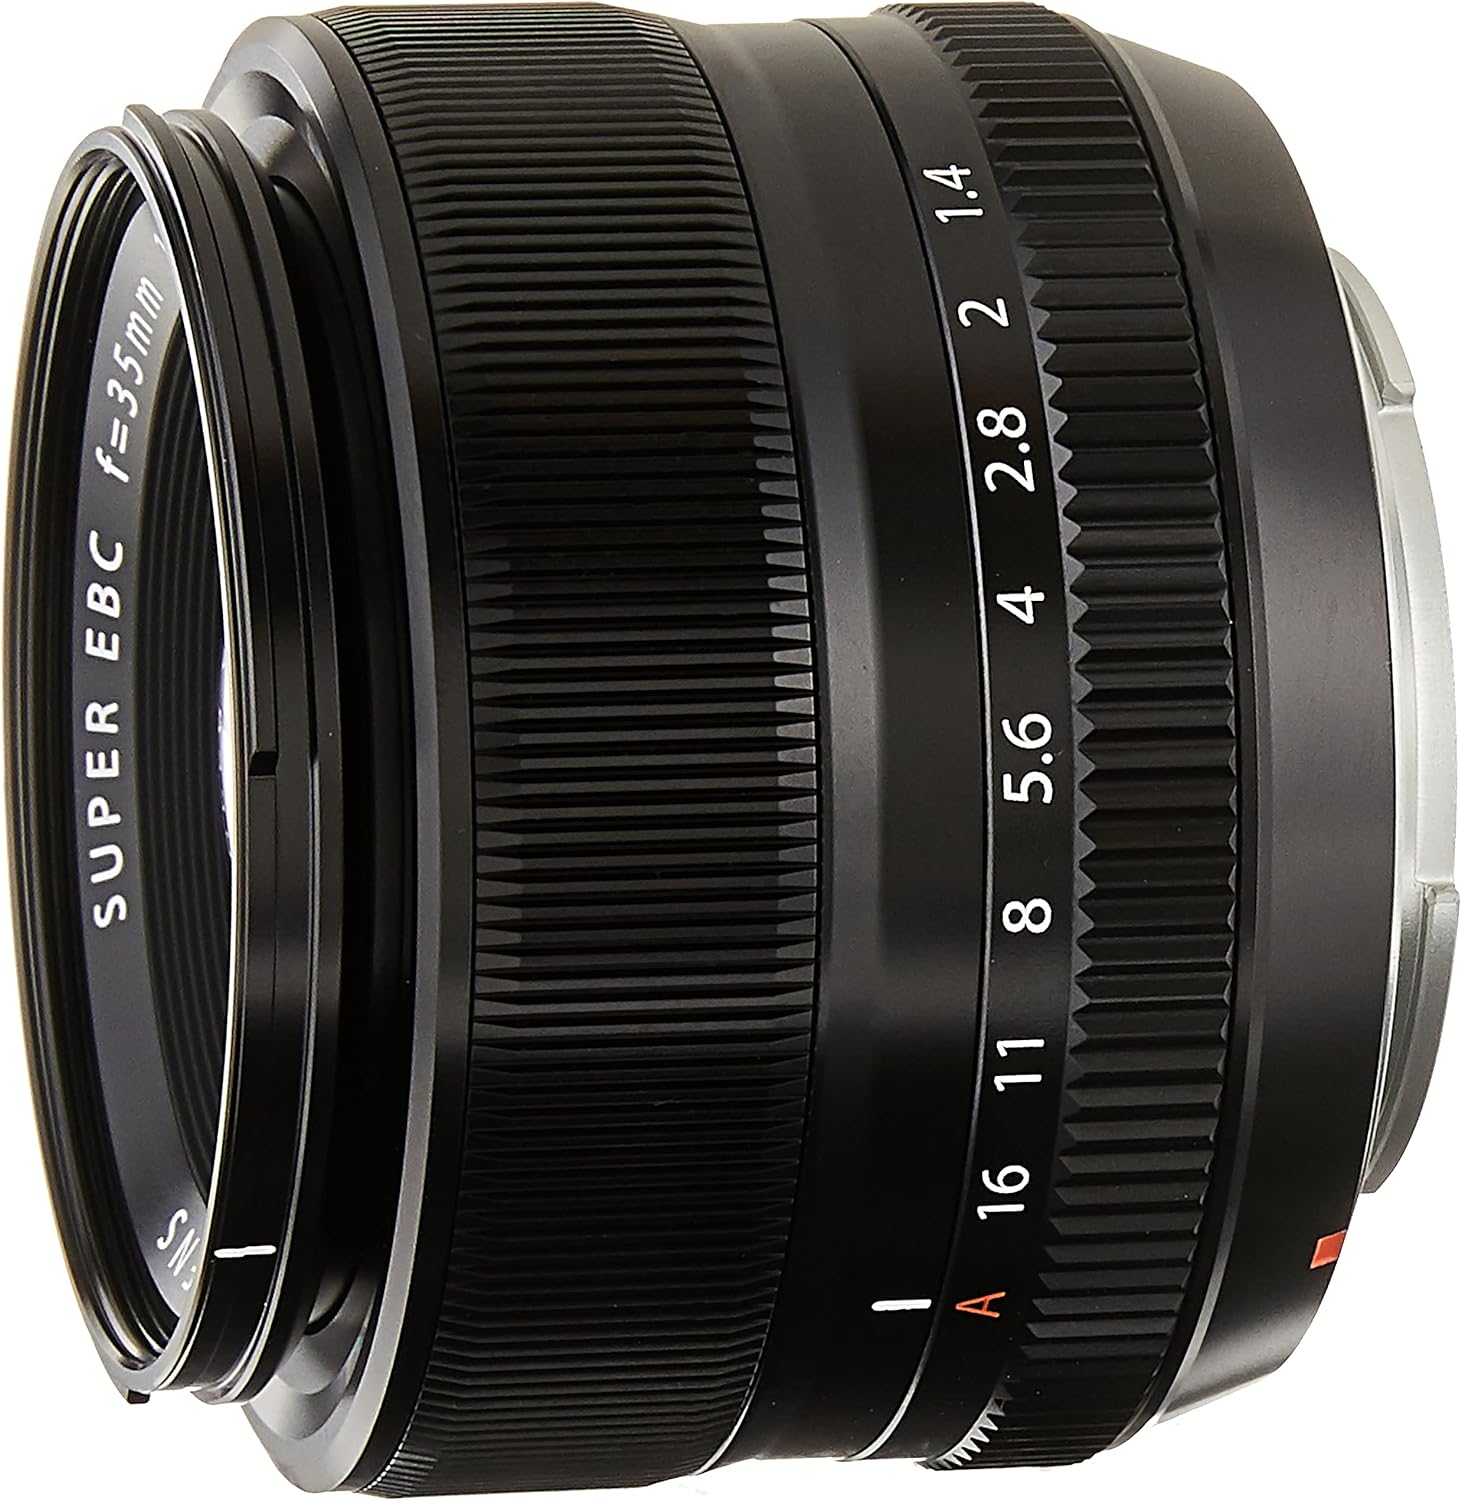 Lens Guide For Fujifilm Cameras